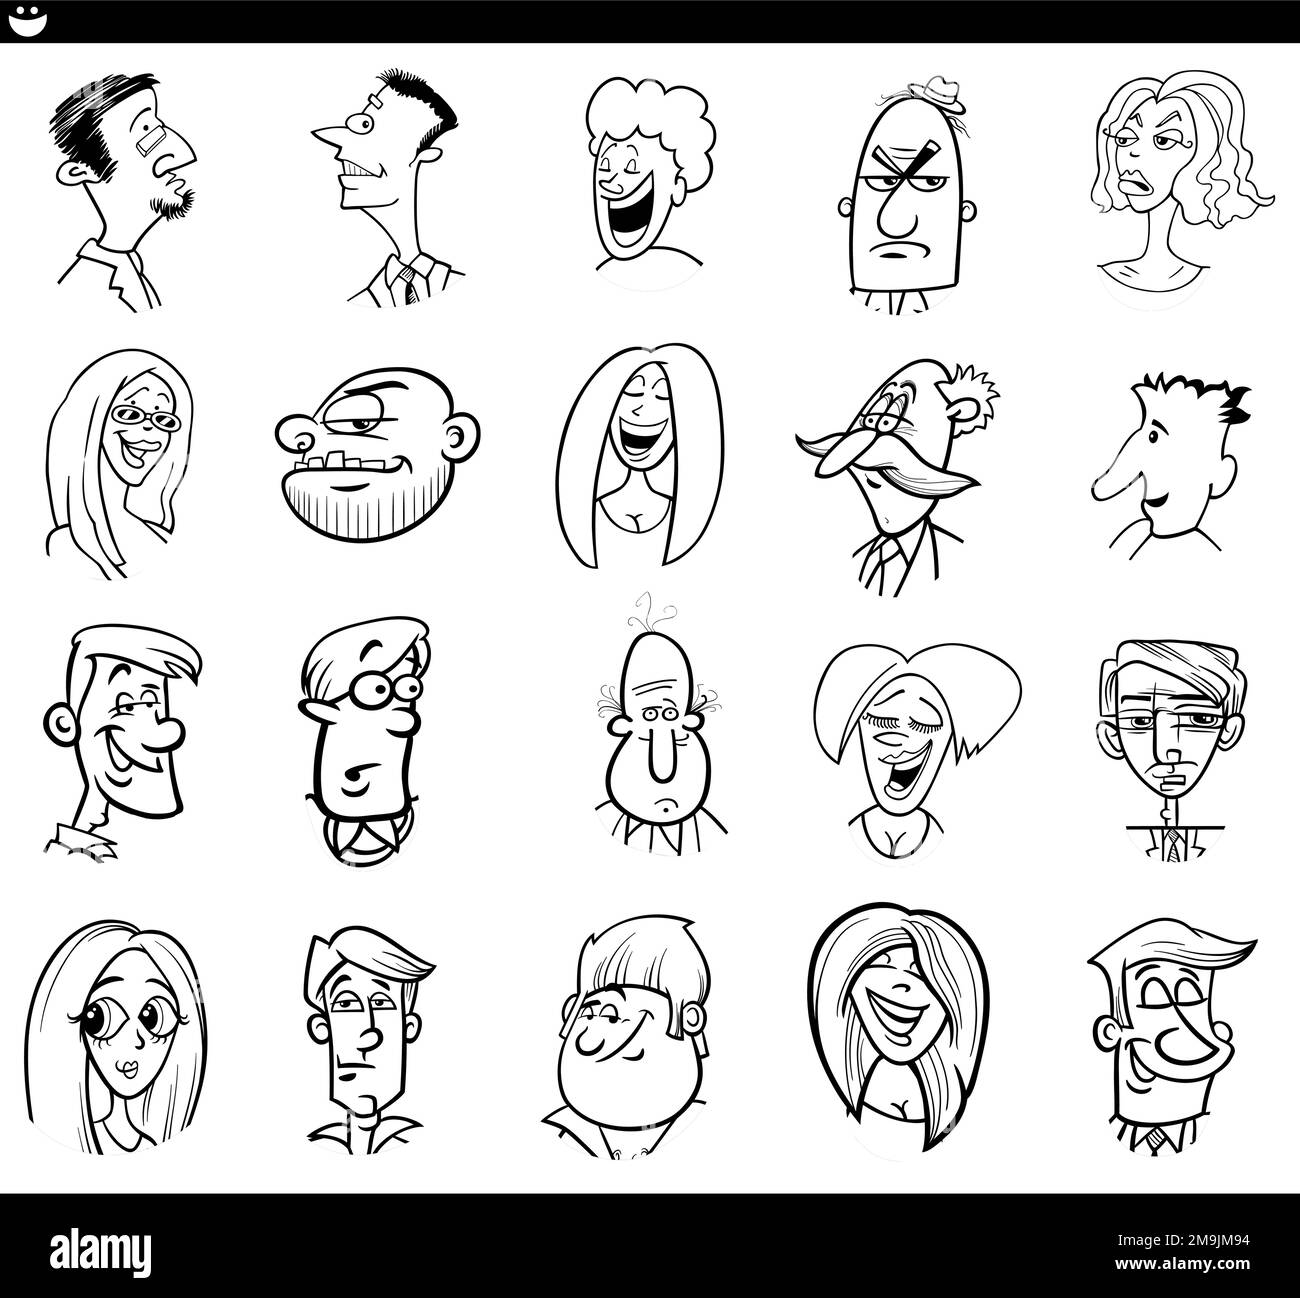 Schwarz-weiß-Cartoon mit lustigen Charakteren, Gesichtern und Emotionen Stock Vektor